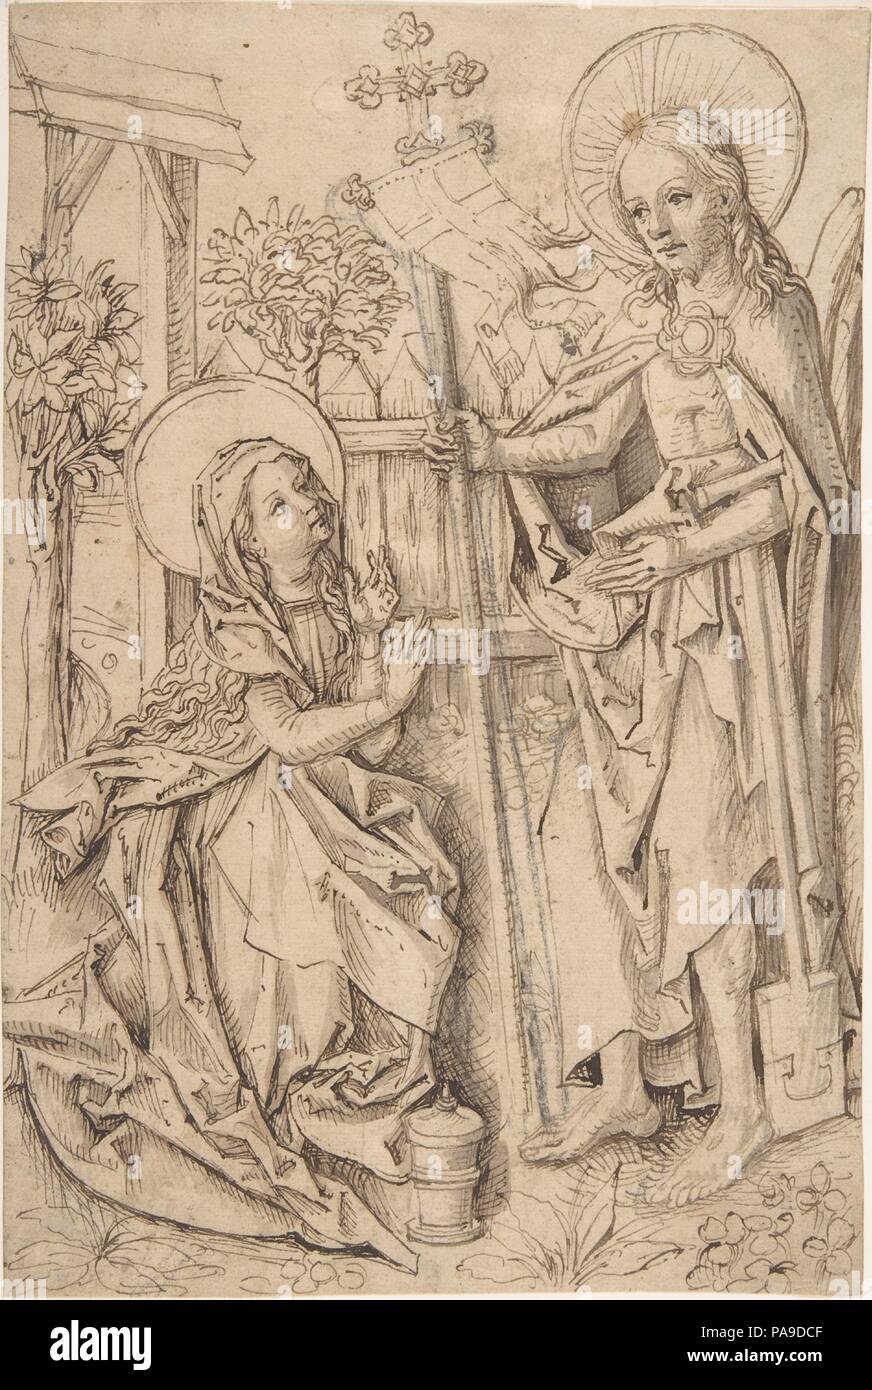 Cristo apareciendo a María Magdalena. Artista: Maestro de las cortinas por estudios (alemán, Estrasburgo, ca. 1470-1500). Dimensiones: 9 7/8" x 6 5/8". (25,1 x 16,8 cm). Ex Atribución: antes atribuidas a anónimos, Alemán. Fecha: ca. 1490. Aunque el artista apodado el 'Master de Coburg Roundels' aún no ha sido identificado por su nombre, resulta claro de sus supérstites vidrieras y dibujos que él era una figura fundamental en el arte renana superior durante el último cuarto del siglo XV y en la historia de los primeros dibujo alemana en general. Él era activo en Estrasburgo donde Foto de stock